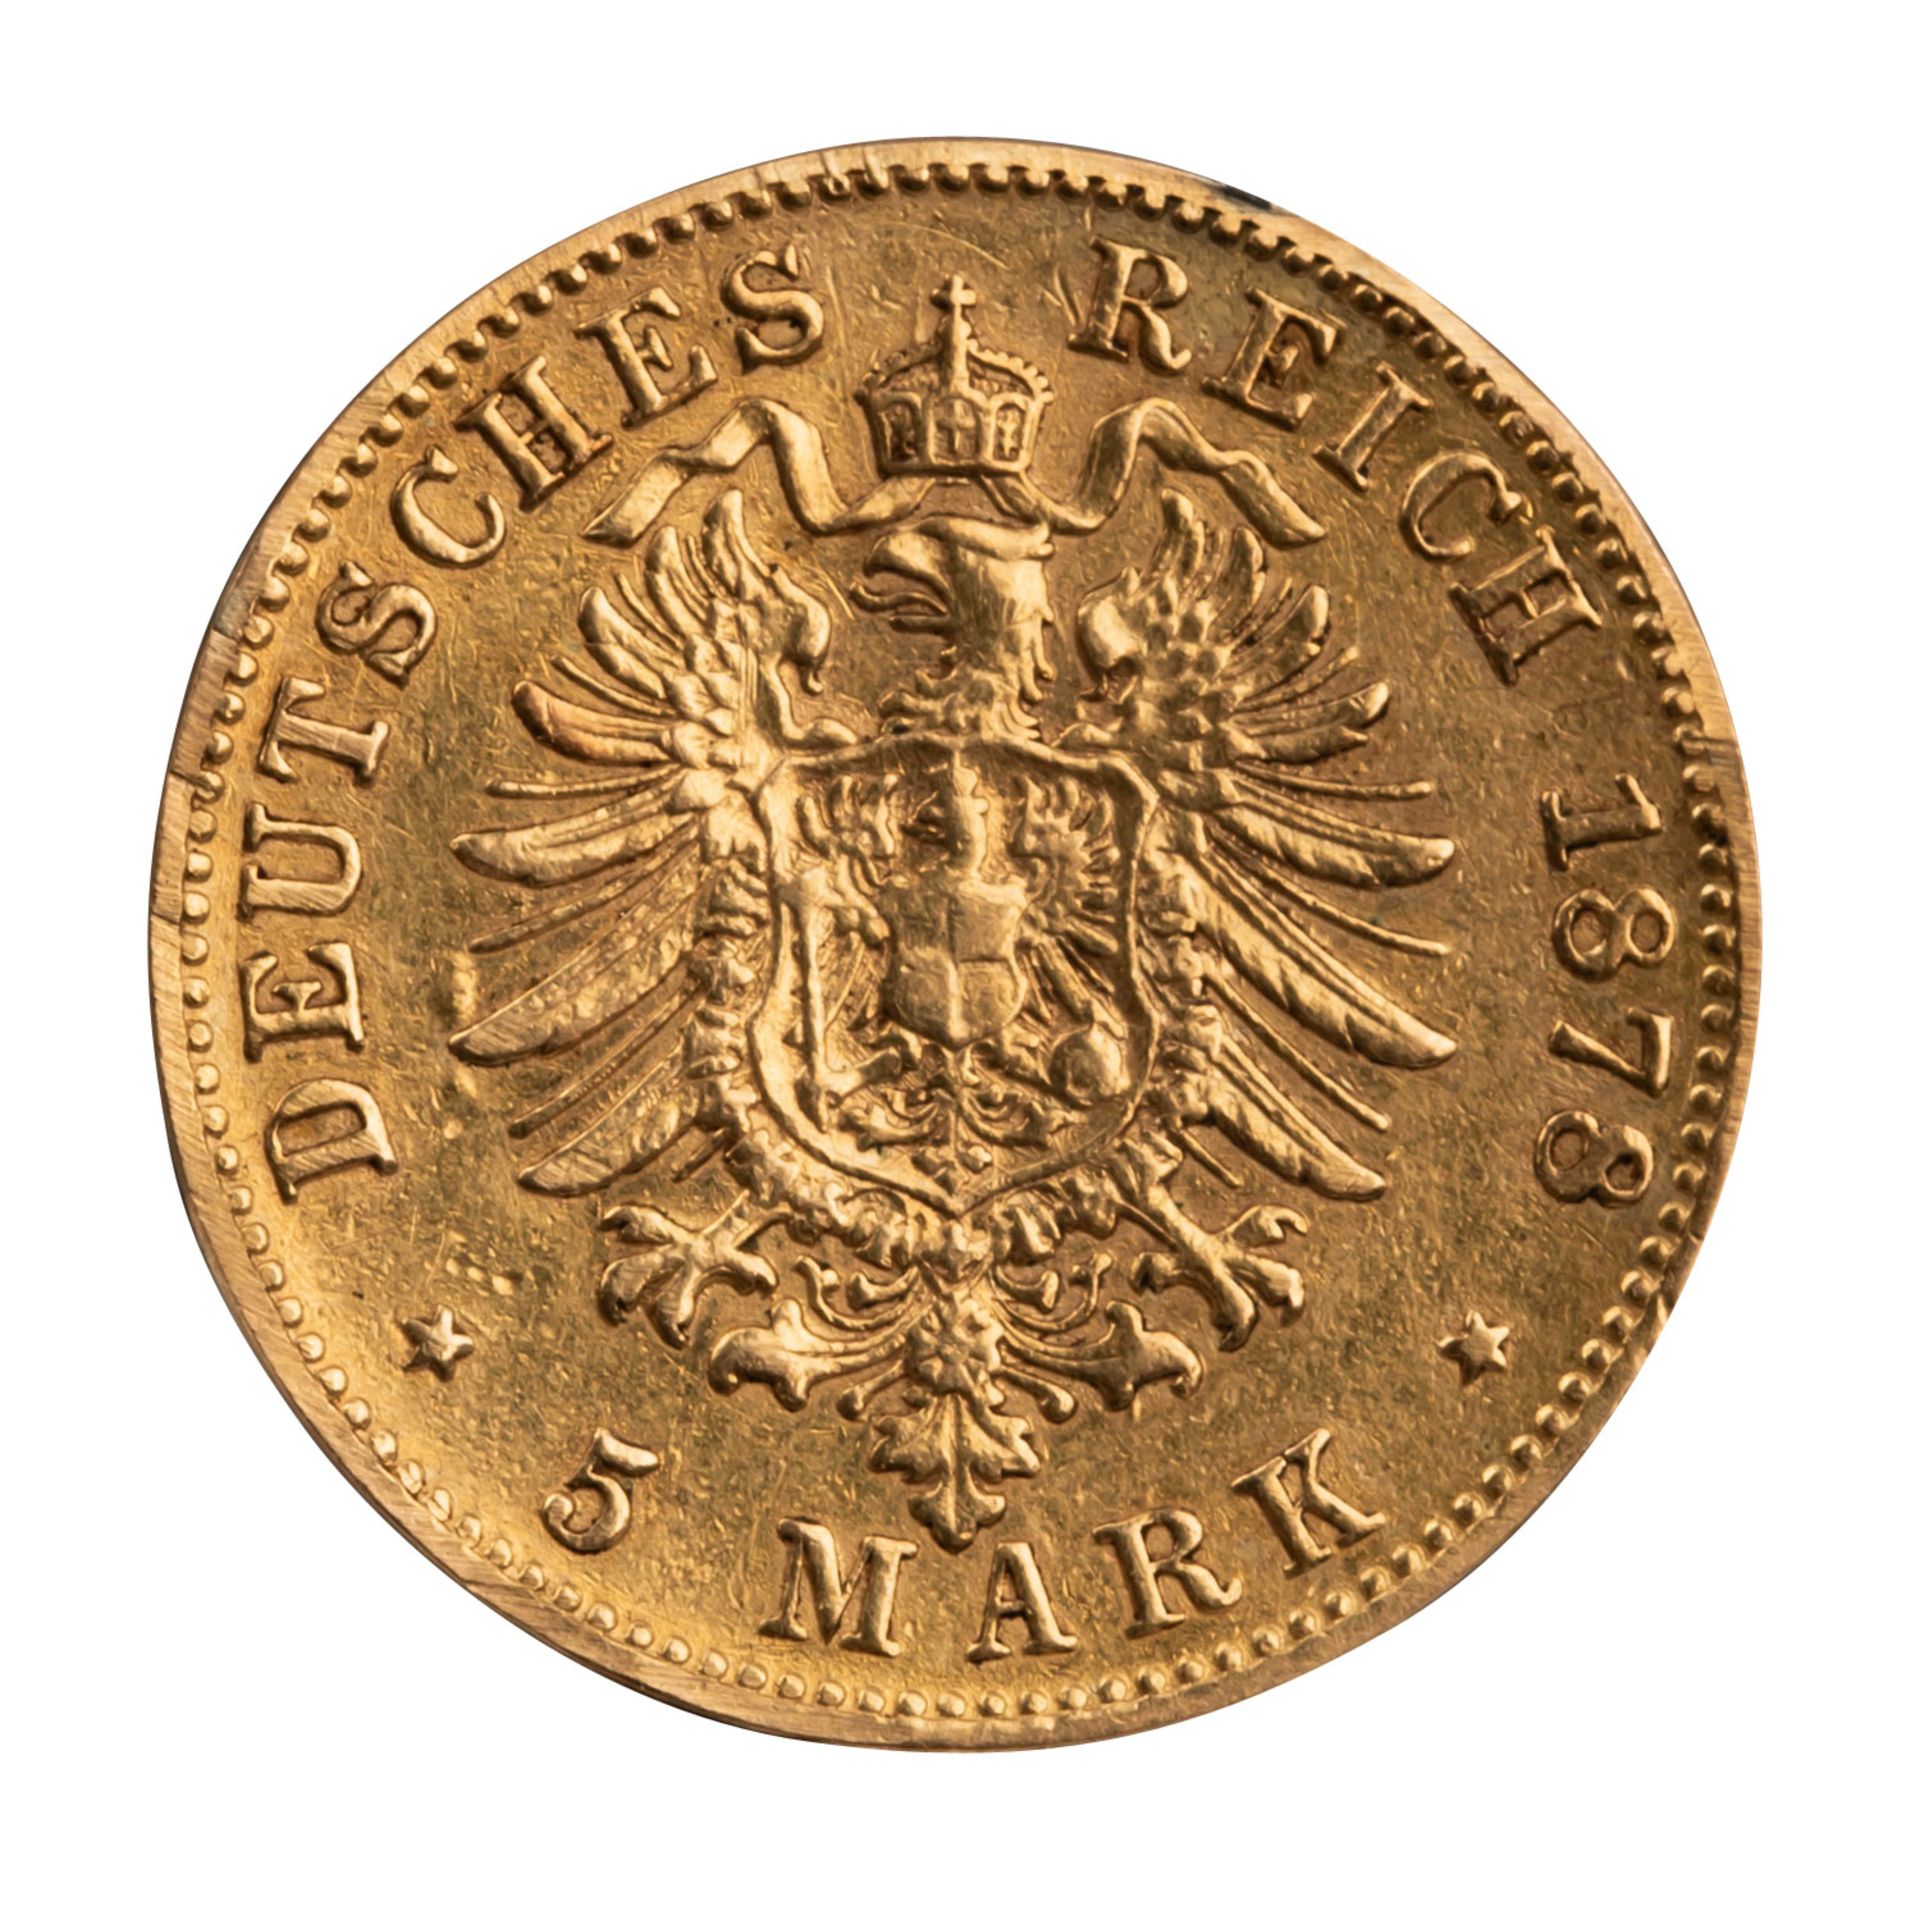 Königreich Bayern/Gold - 5 Mark 1878/D, König Ludwig II. (1864-1886), - Bild 2 aus 2